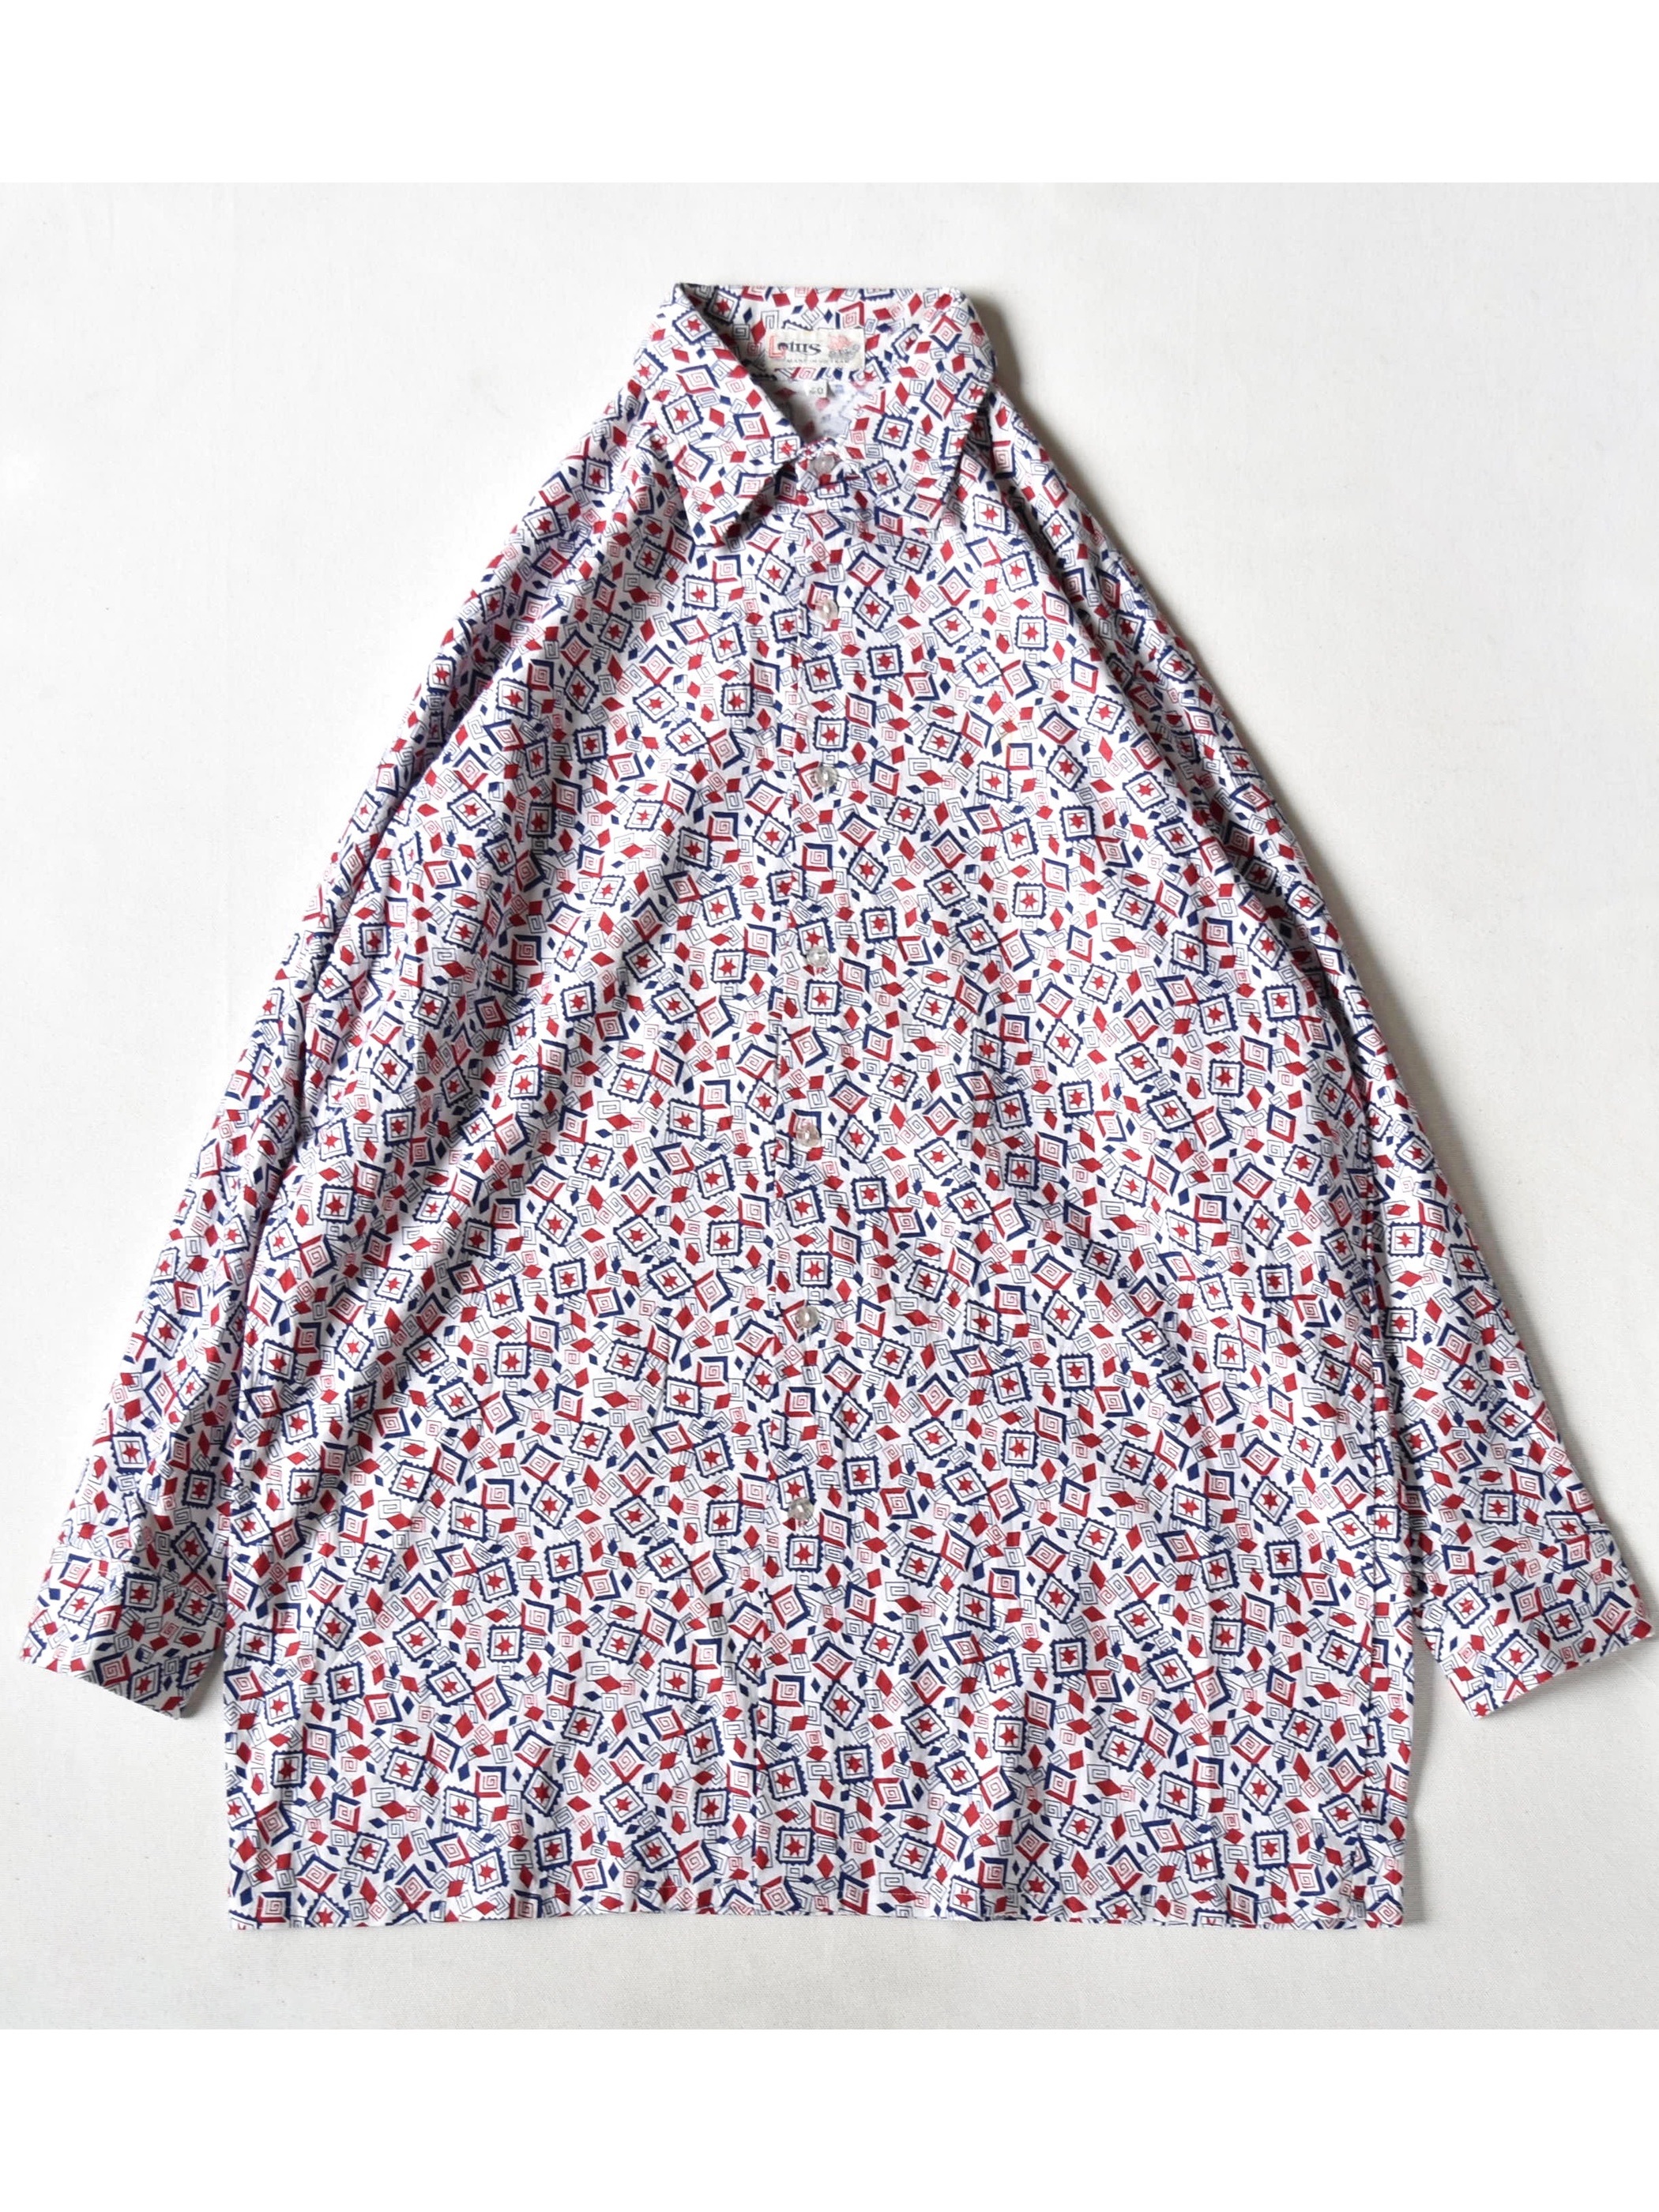 ビンテージ 総柄 シャツ Vintage All Pattern Shirt Yukaku Houyhnhnm S